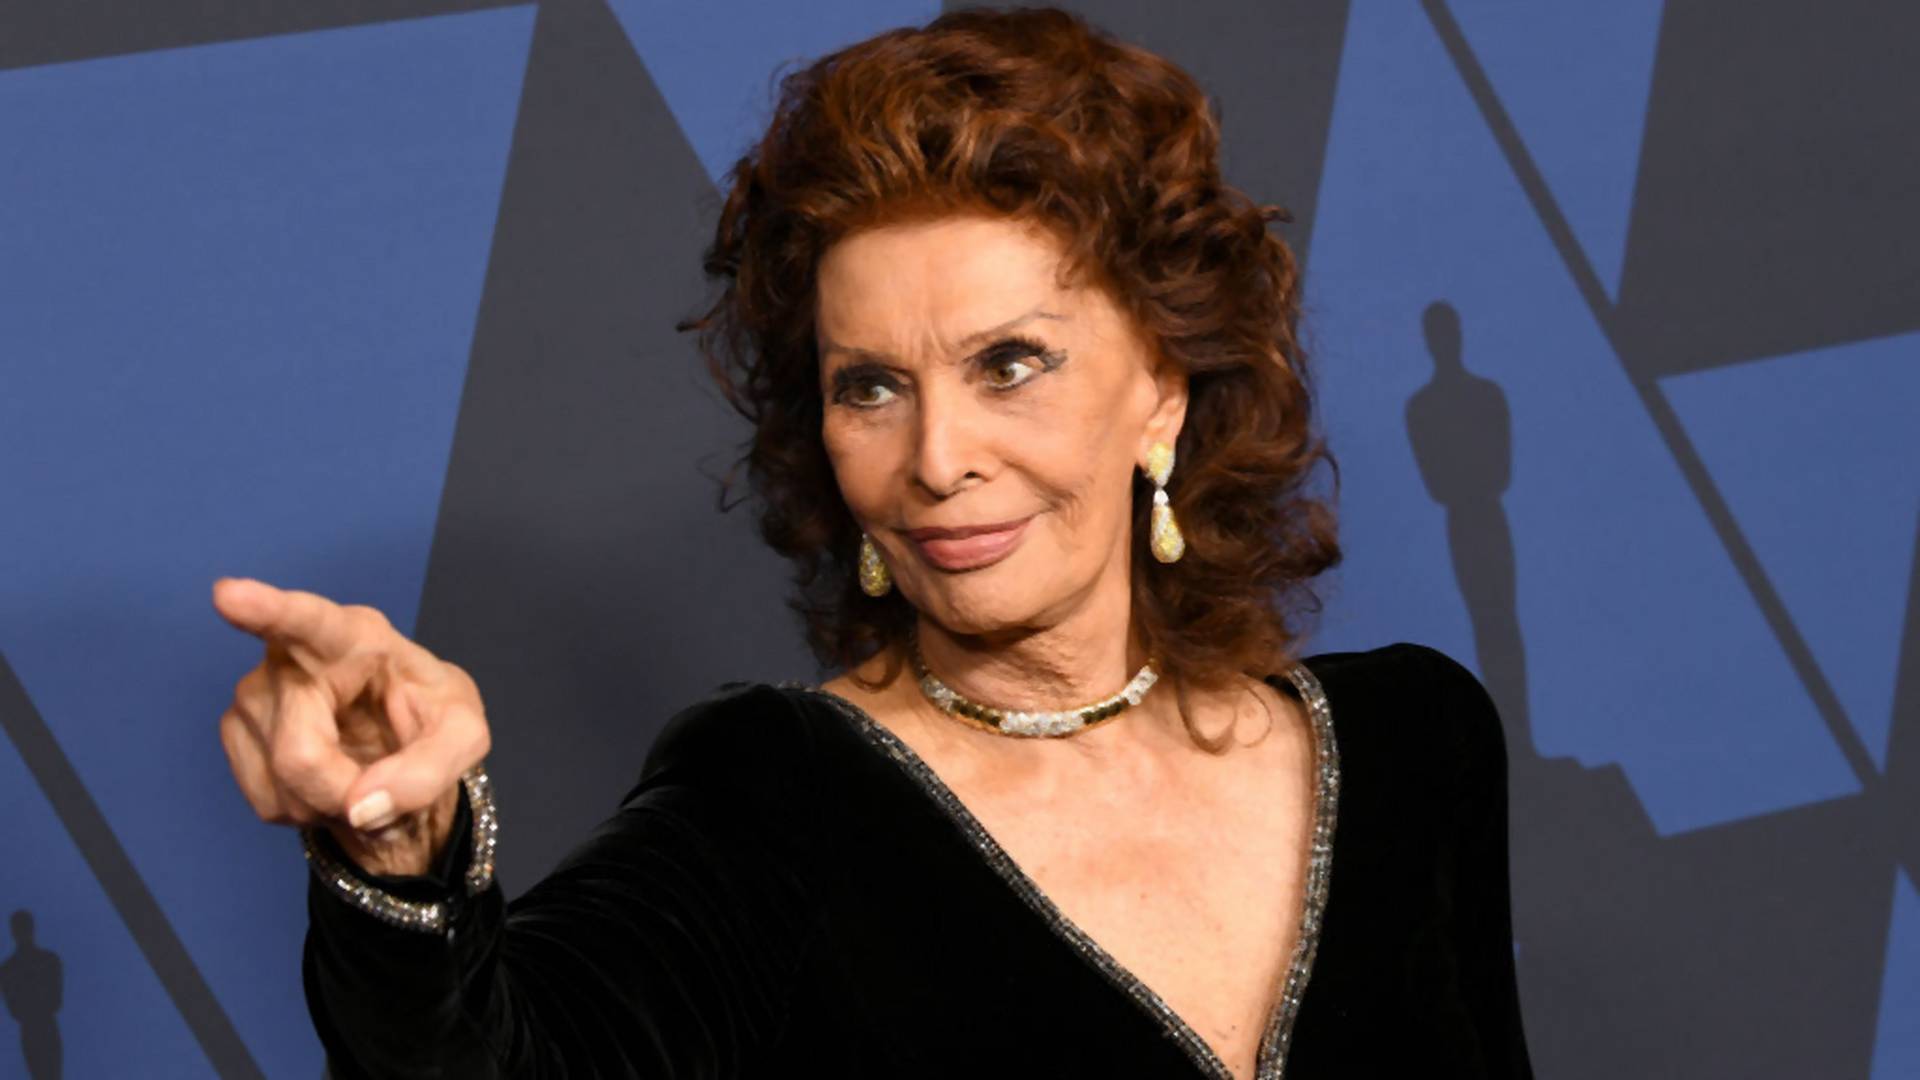 Lengyel-olasz koprodukcióban forgat újra a 78 éves Sophia Loren